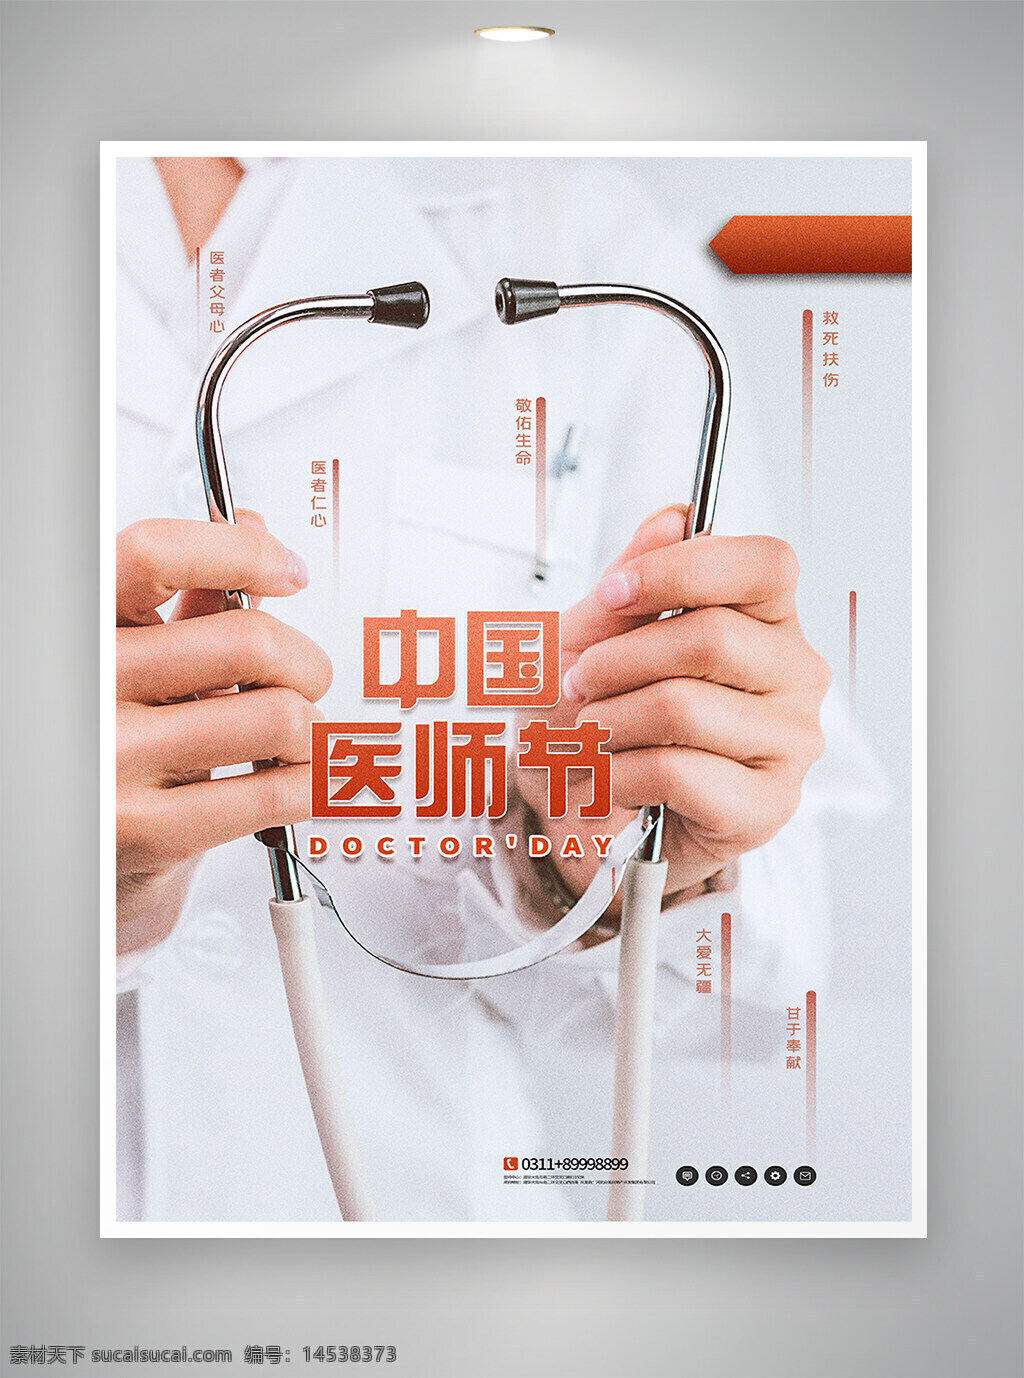 中国医师节 医师节 海报 宣传海报 节日海报 医师节海报